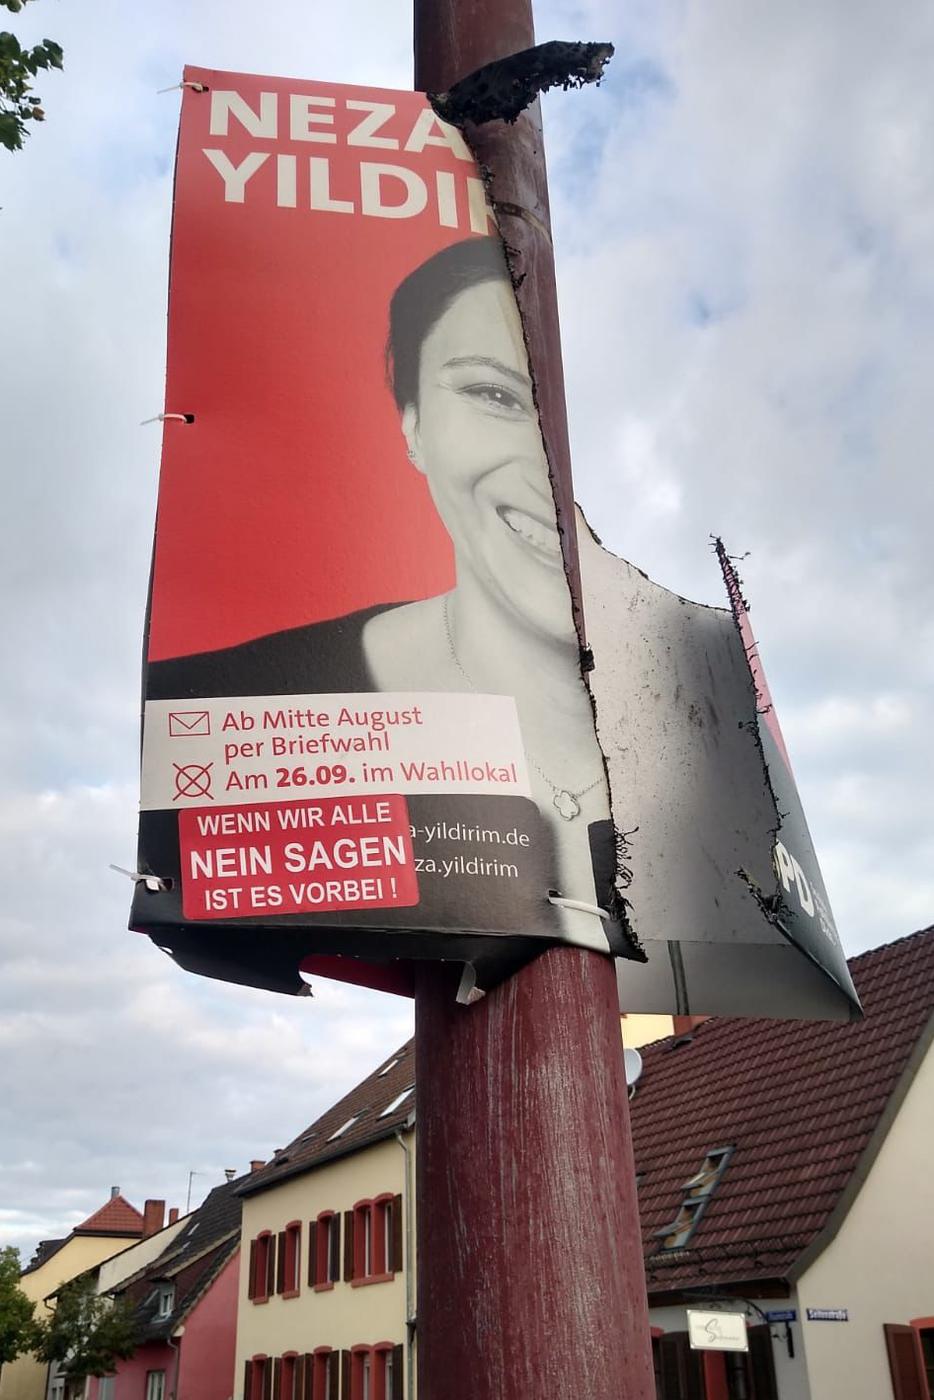 Ebenfalls angekokelt: Ein Wahlplakat der SPD-Bundestagskandidatin für den Wahlkreis Bruchsal-Schwetzingen, Neza Yildirim. 